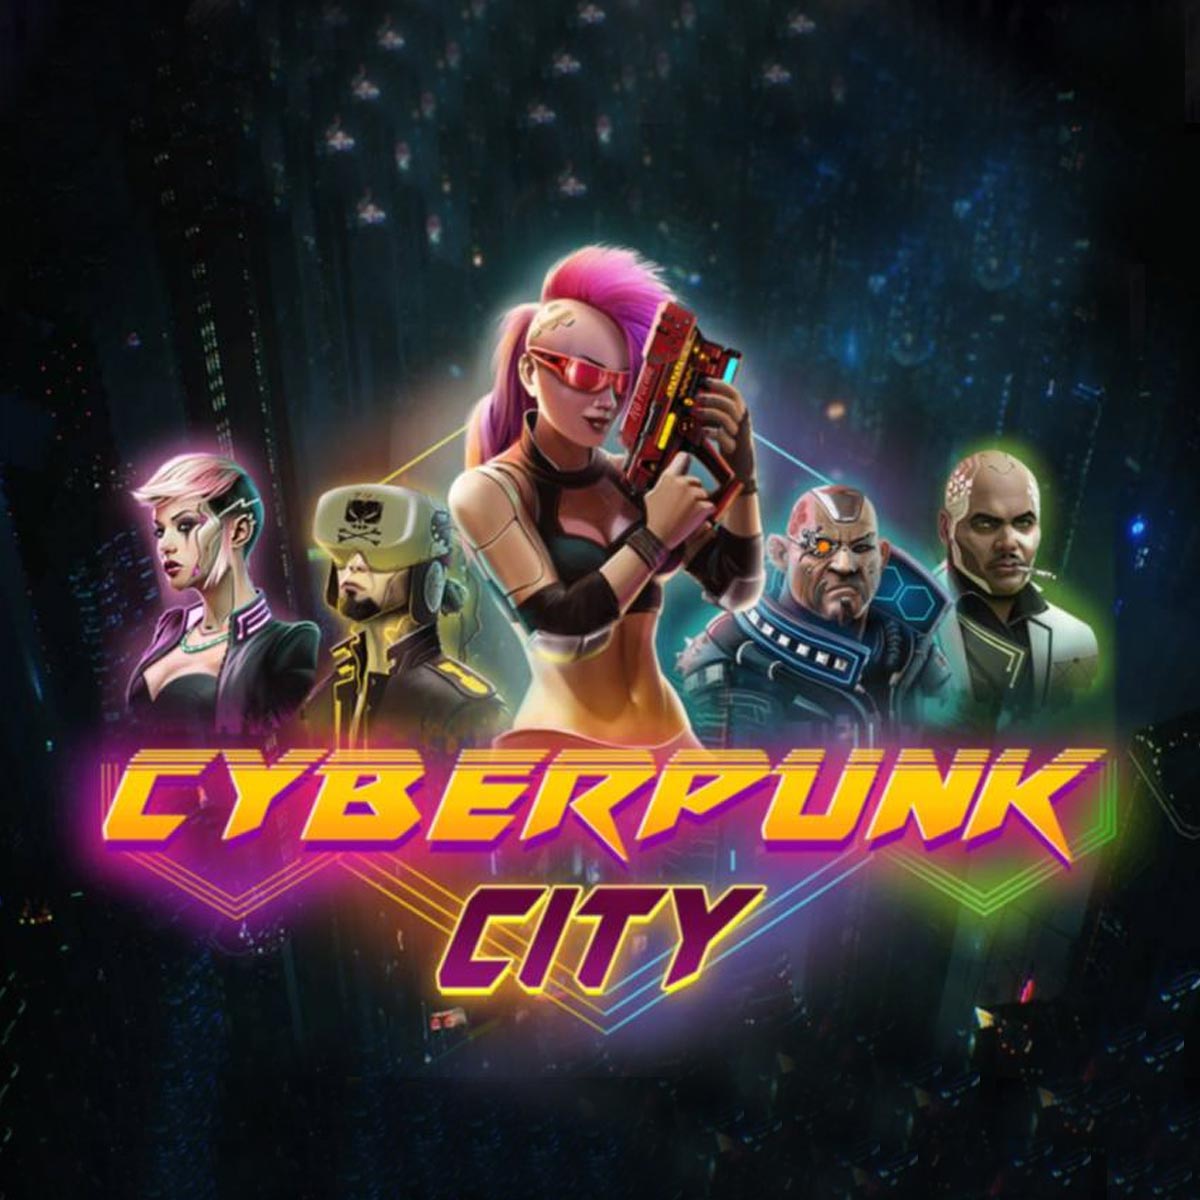 Cyberpunk-City